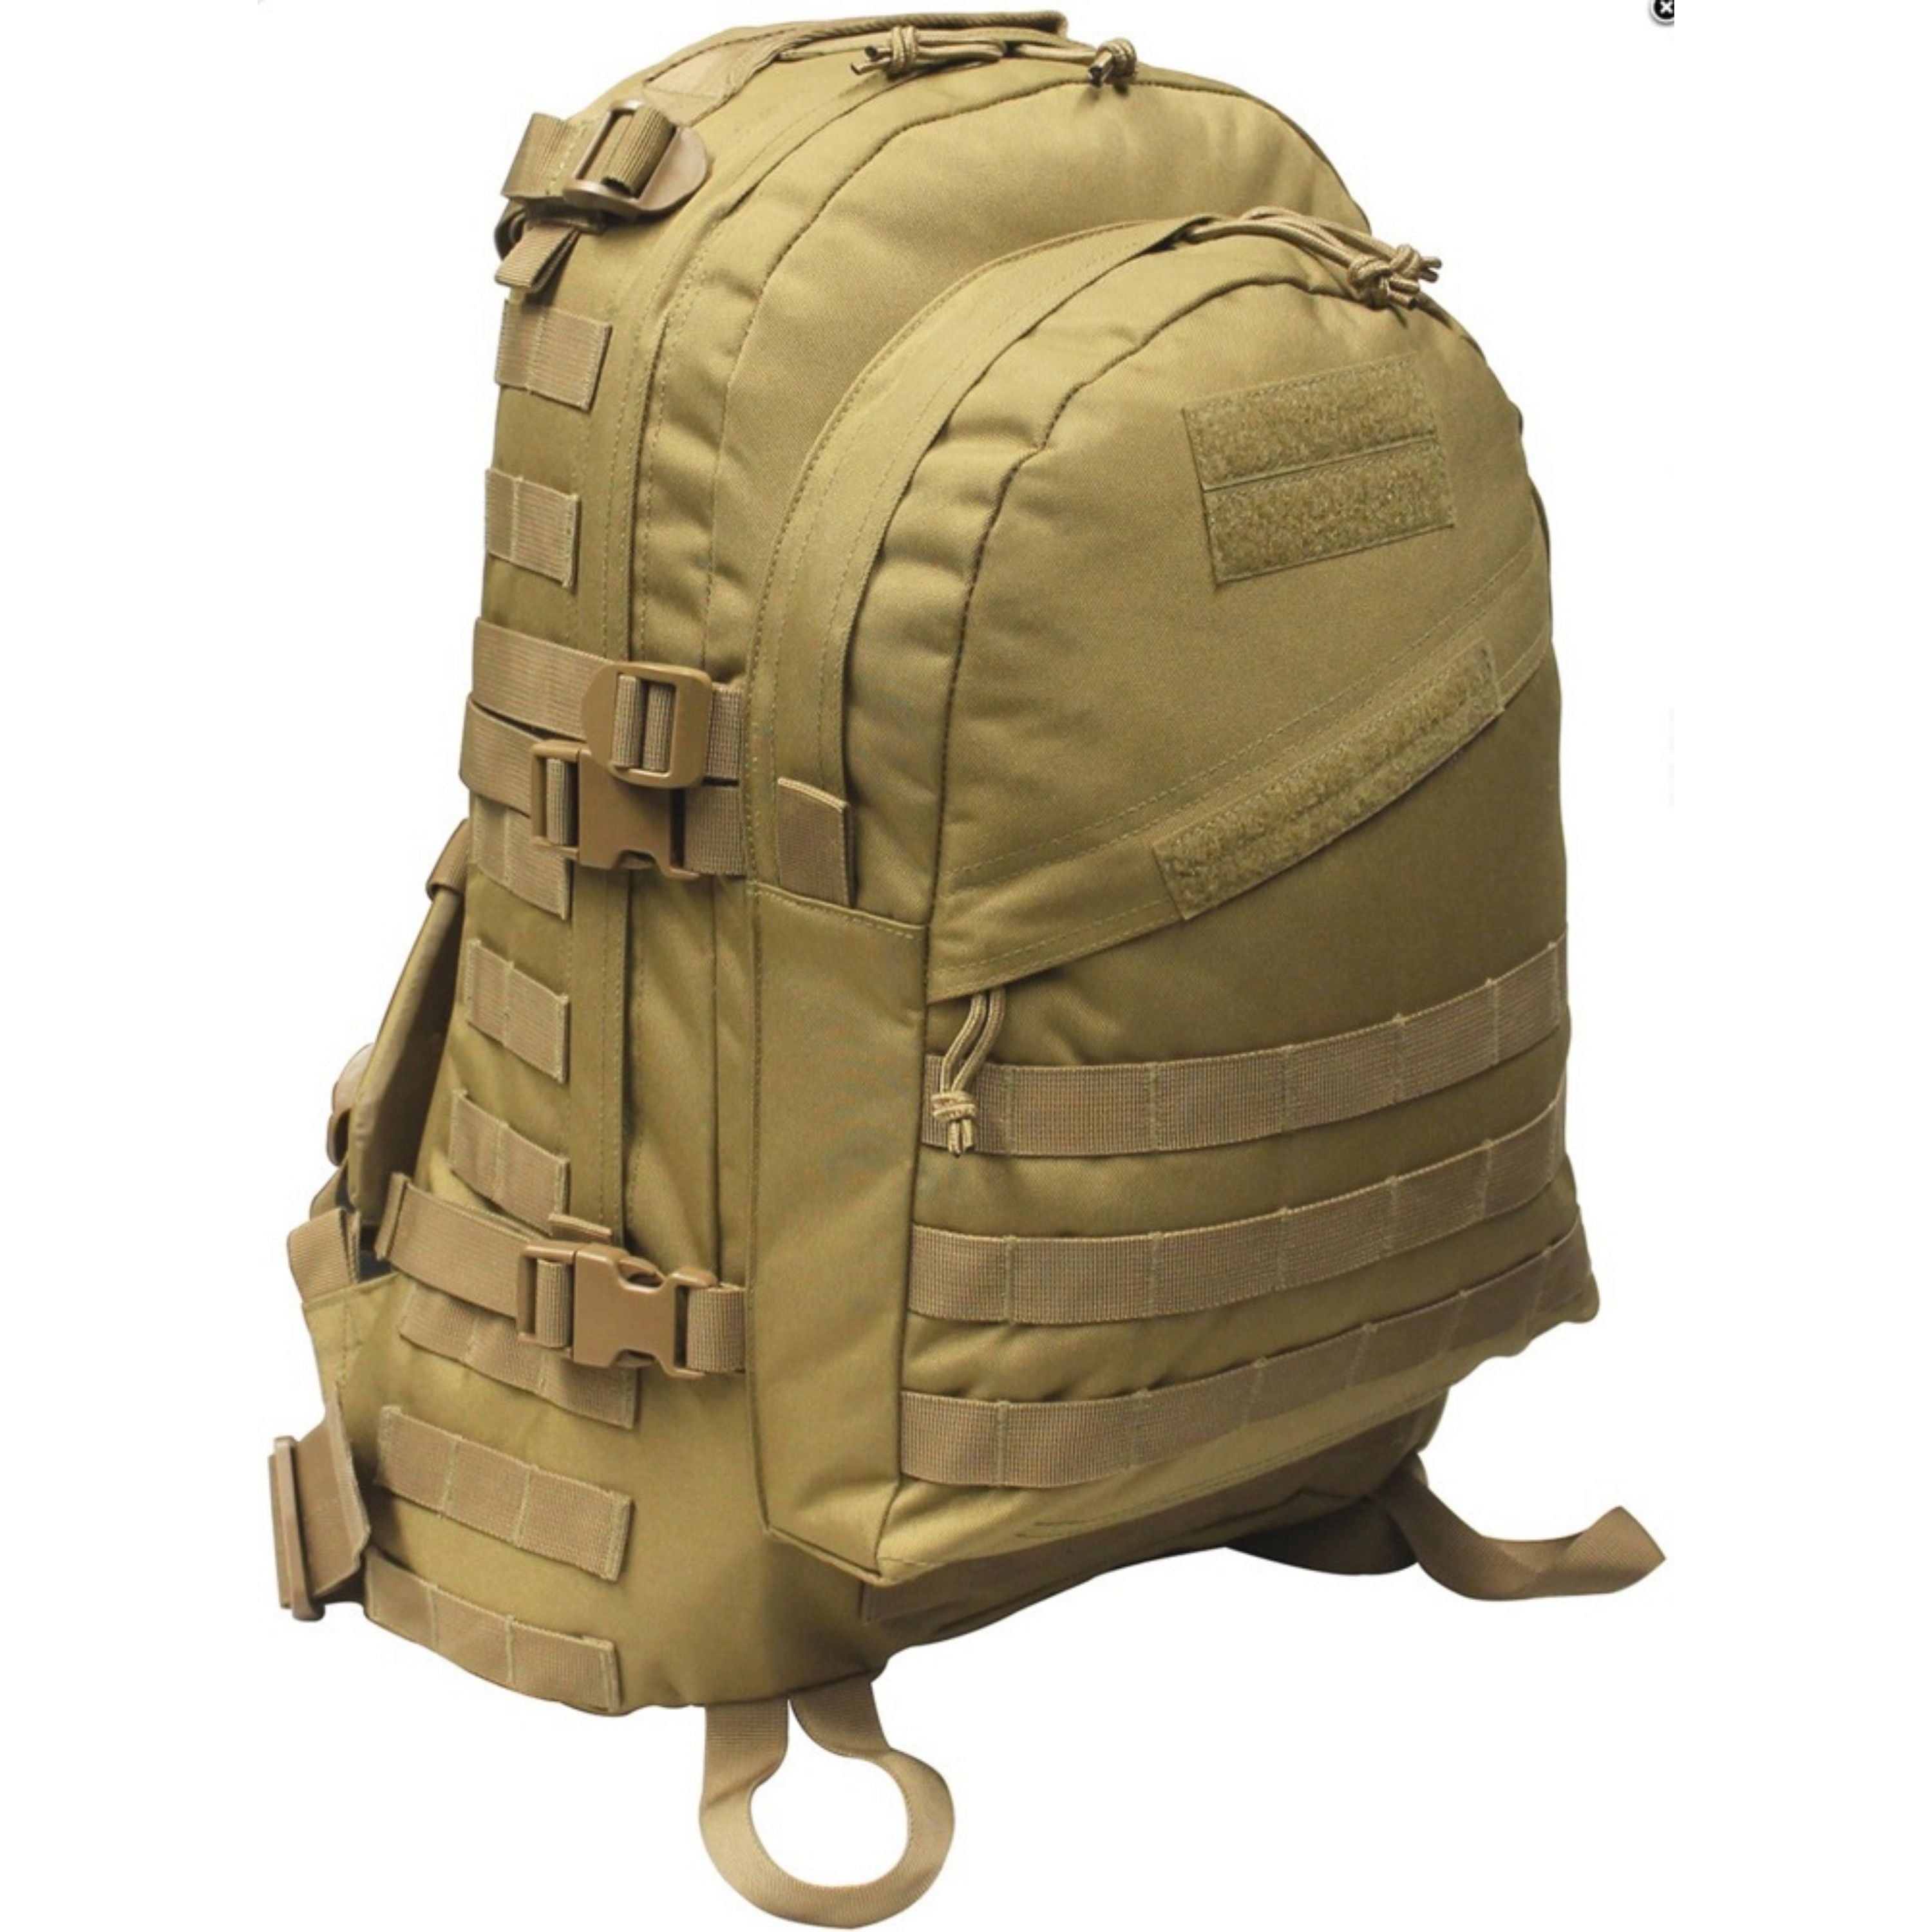 “Mil-Spex” backpack